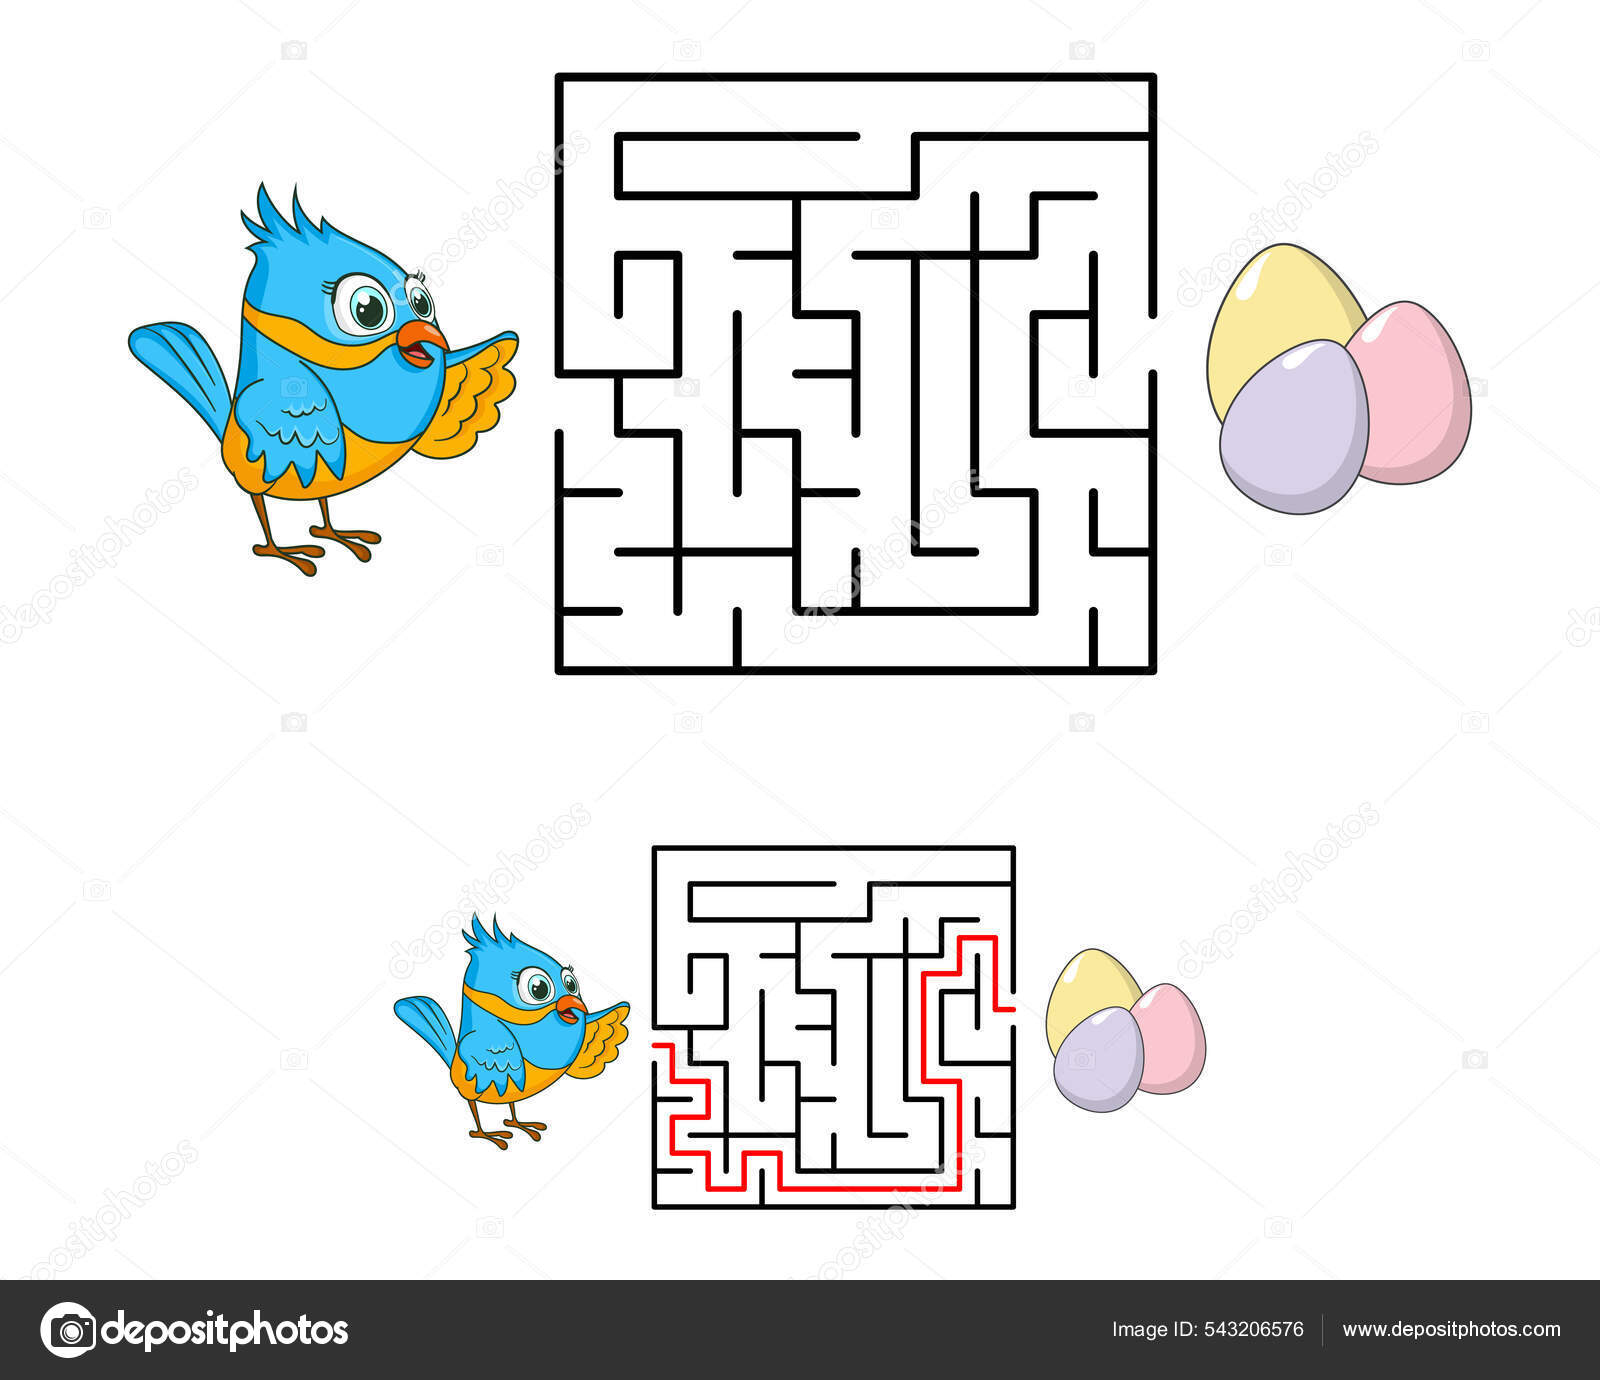 Bal de labyrinthe, Boule de puzzle pour les enfants